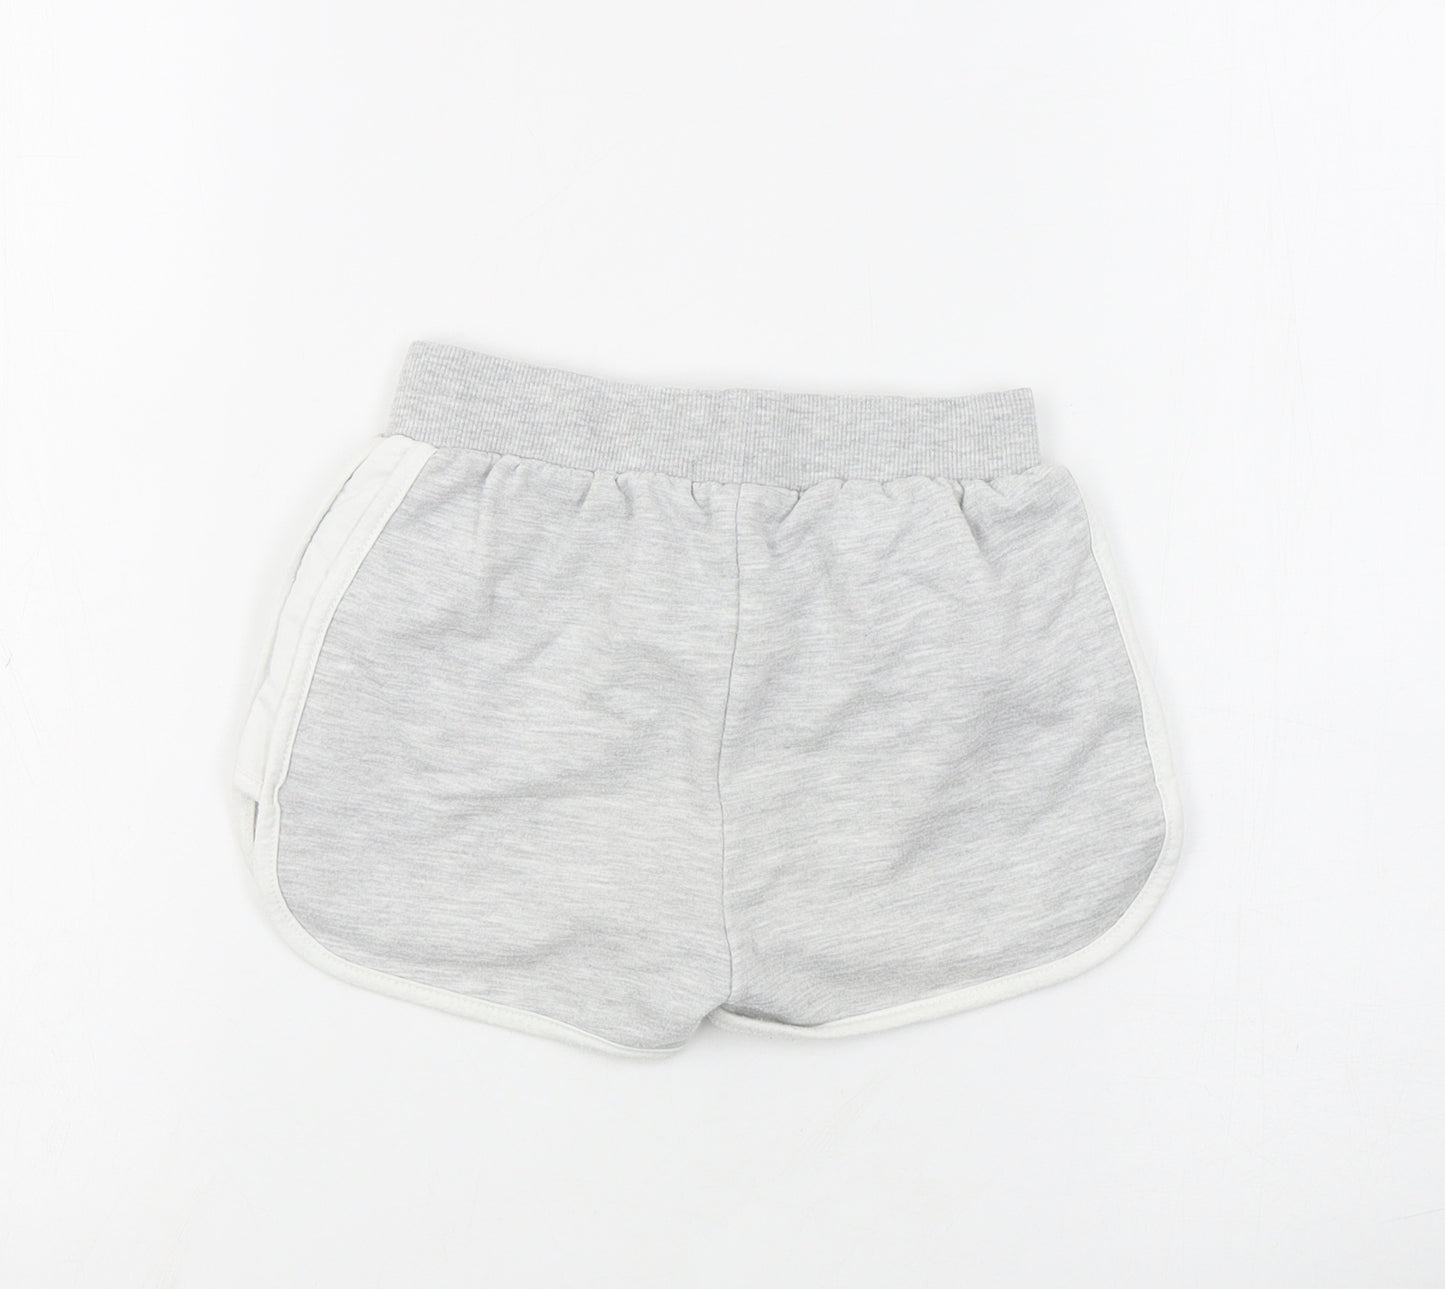 Primark Girls Grey  Cotton Sweat Shorts Size 6-7 Years  Regular Drawstring